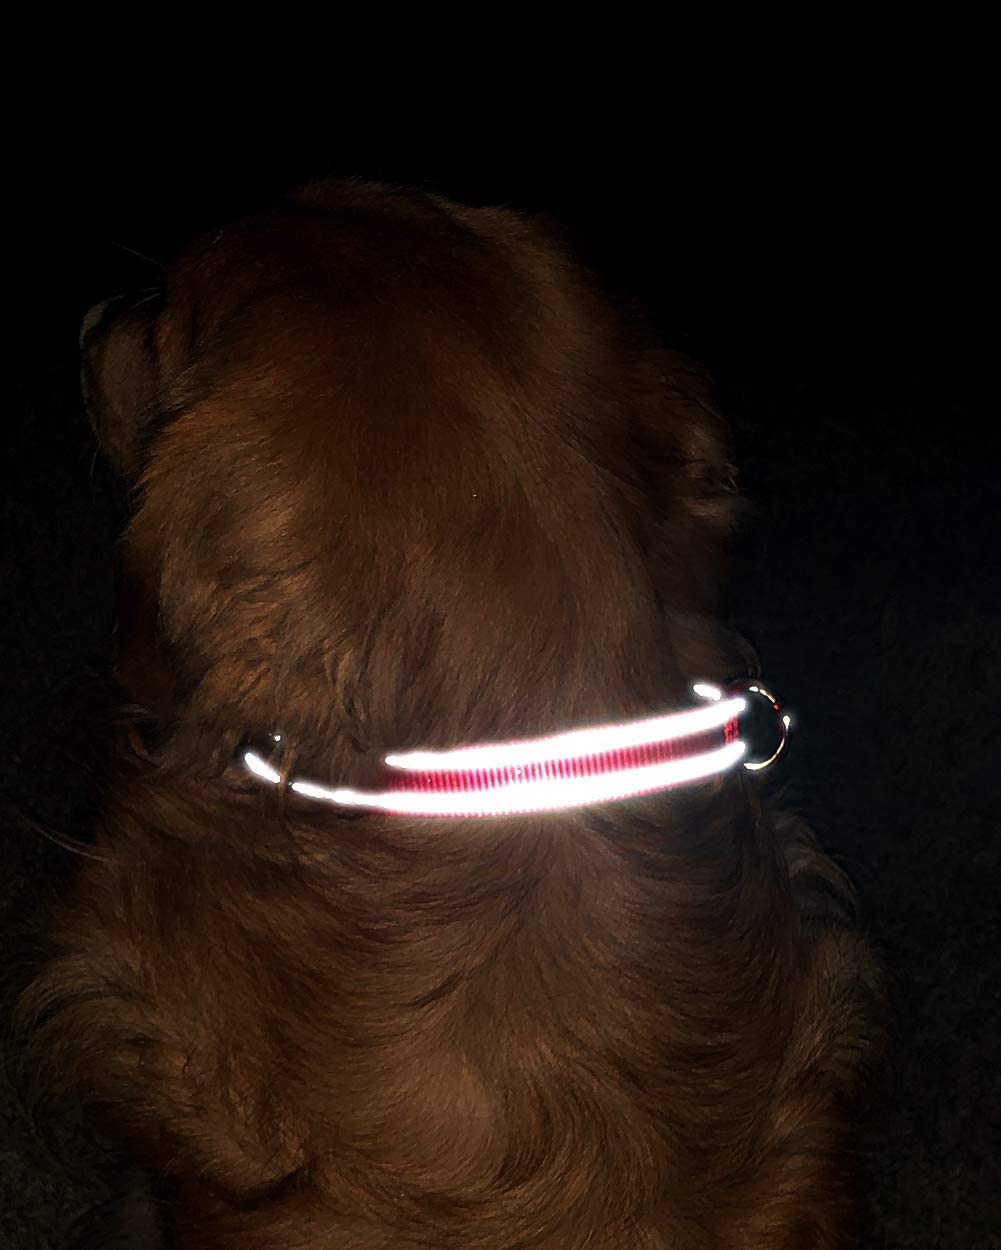  TagME Collar de Perro Reflectante Personalizado,Placa de Acero Inoxidable,Grabado con Nombre y Número de Teléfono,Deslizar en Las Etiquetas de Identificación del Perro,Rojo 